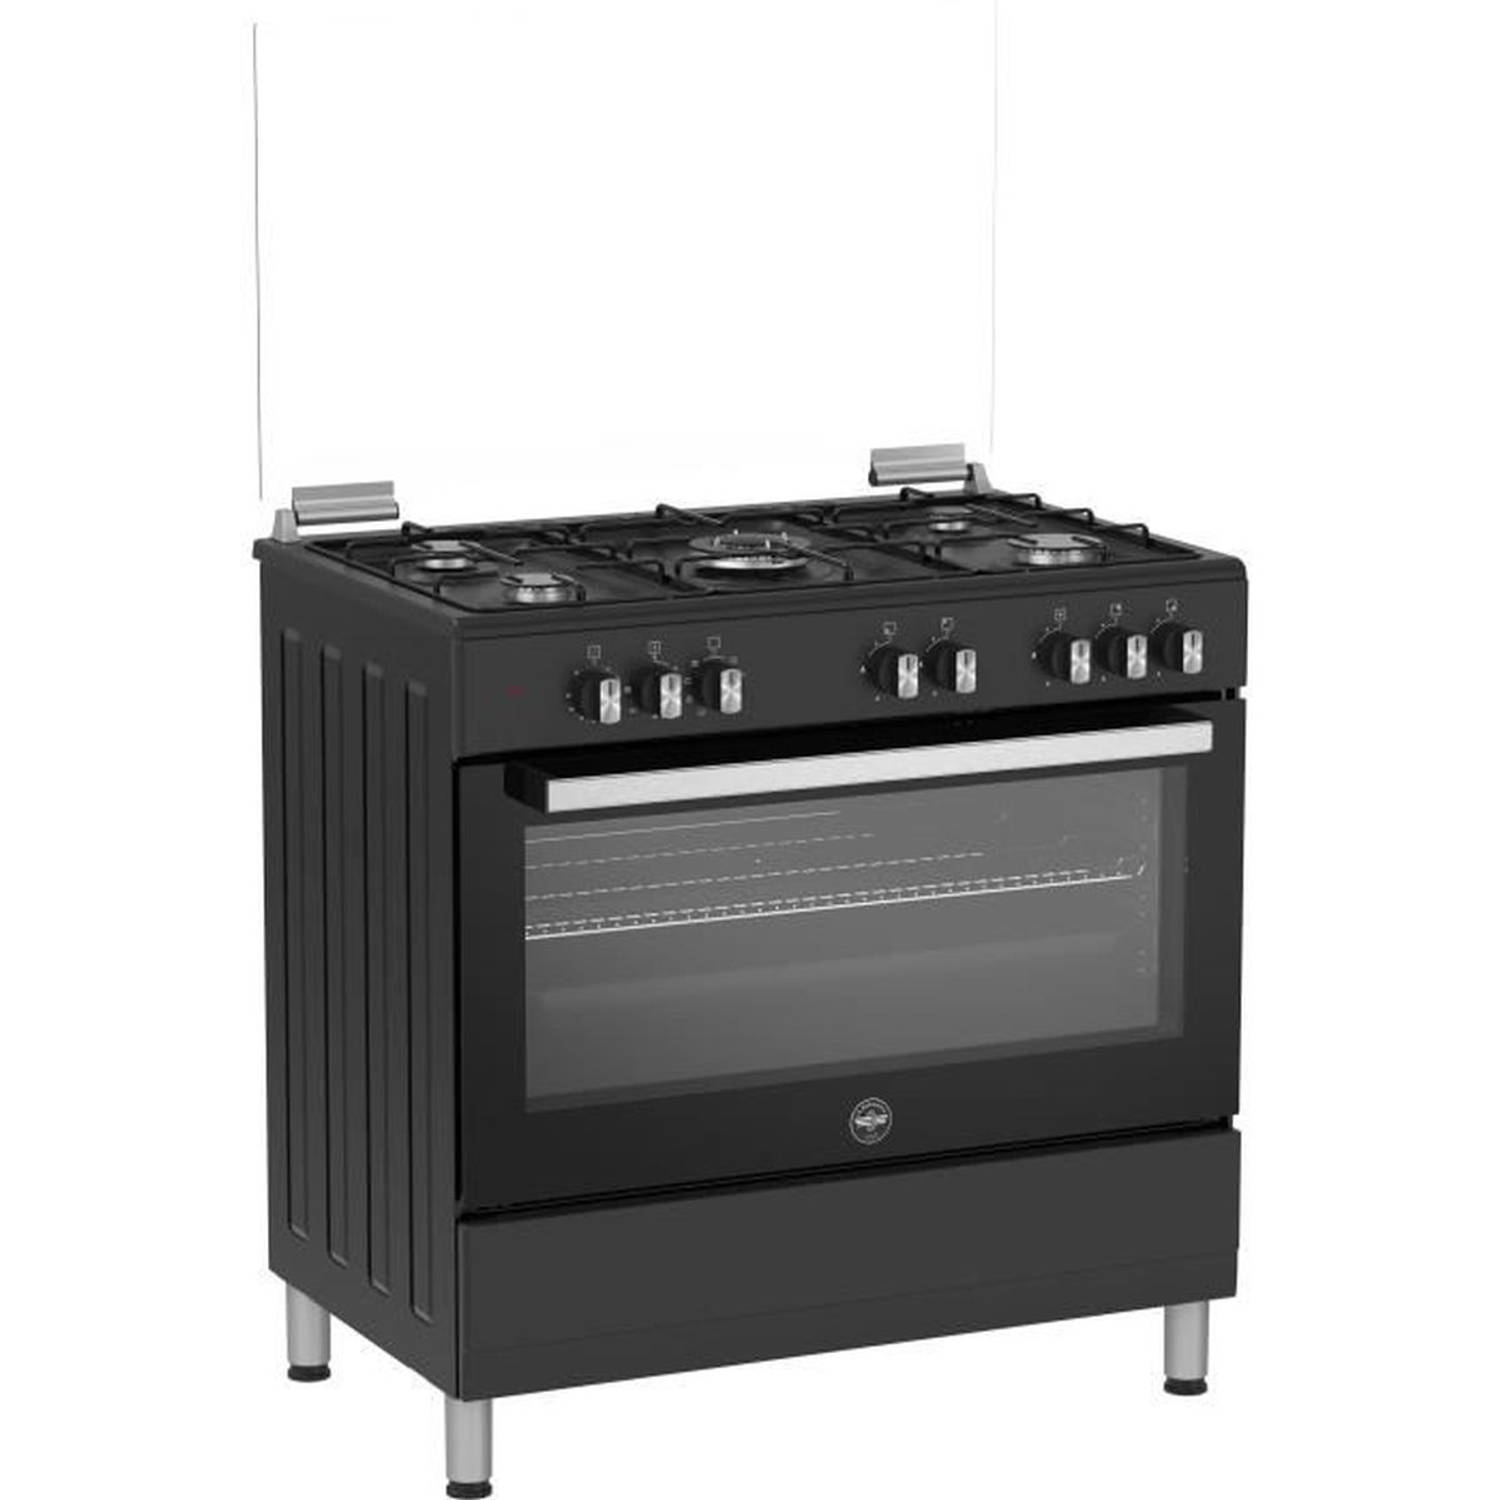 LA GERMANIA kooktoestel - sel9mn - 5 gaspitten - electrische oven - multifunctioneel - Zwart